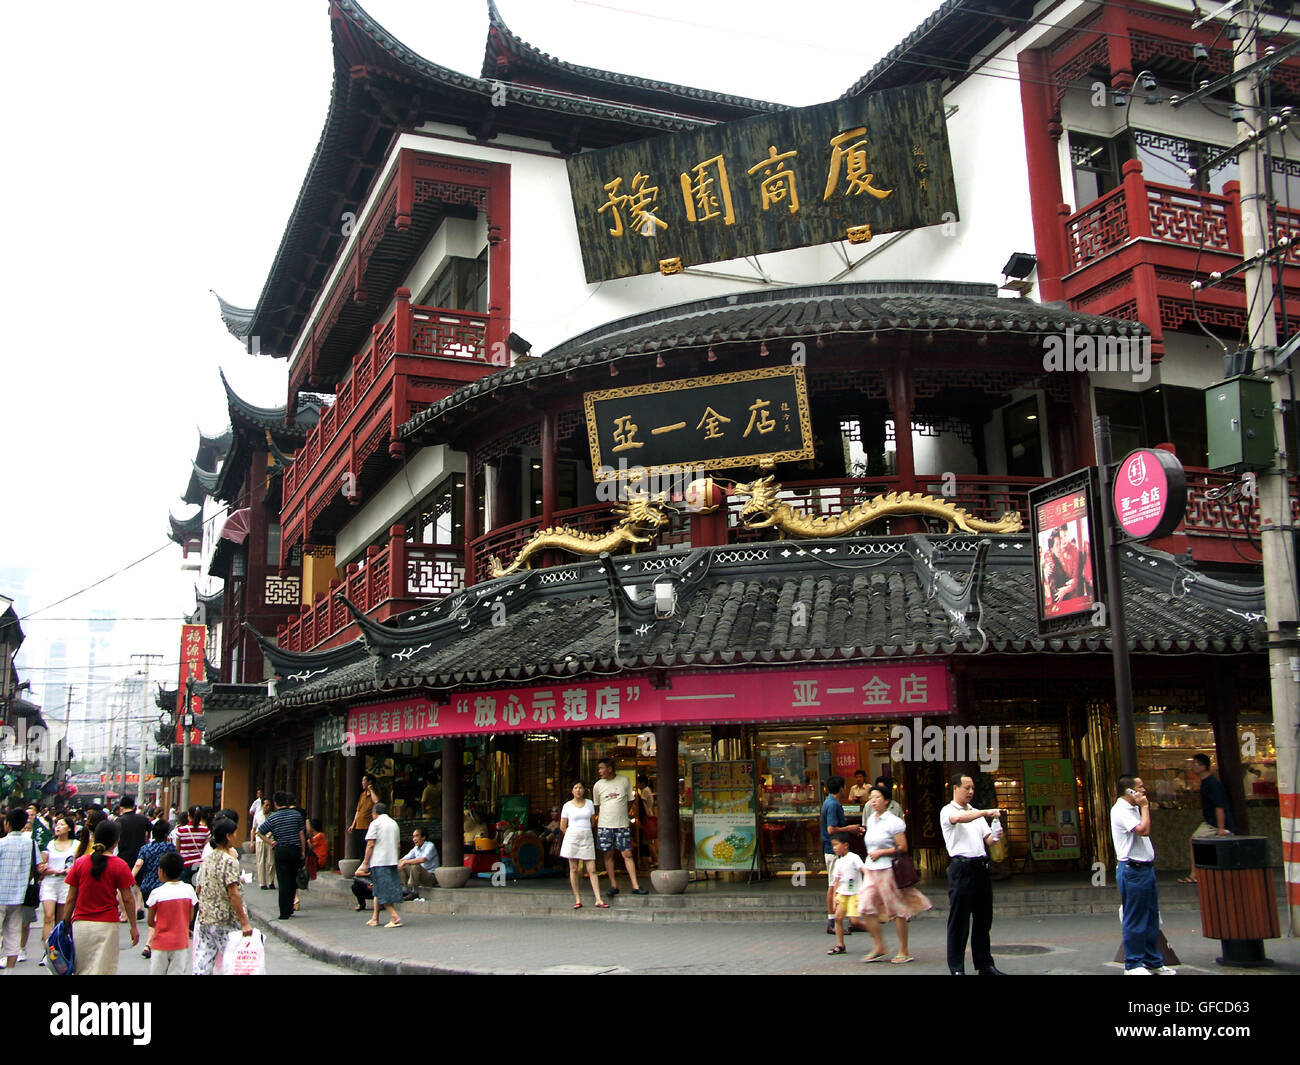 The Tóng Hán Chuan Táng Chinese Medicine Store on Jiùjiàochang Lù Street in Nánshì, the oldest district of Shanghai, China. Stock Photo